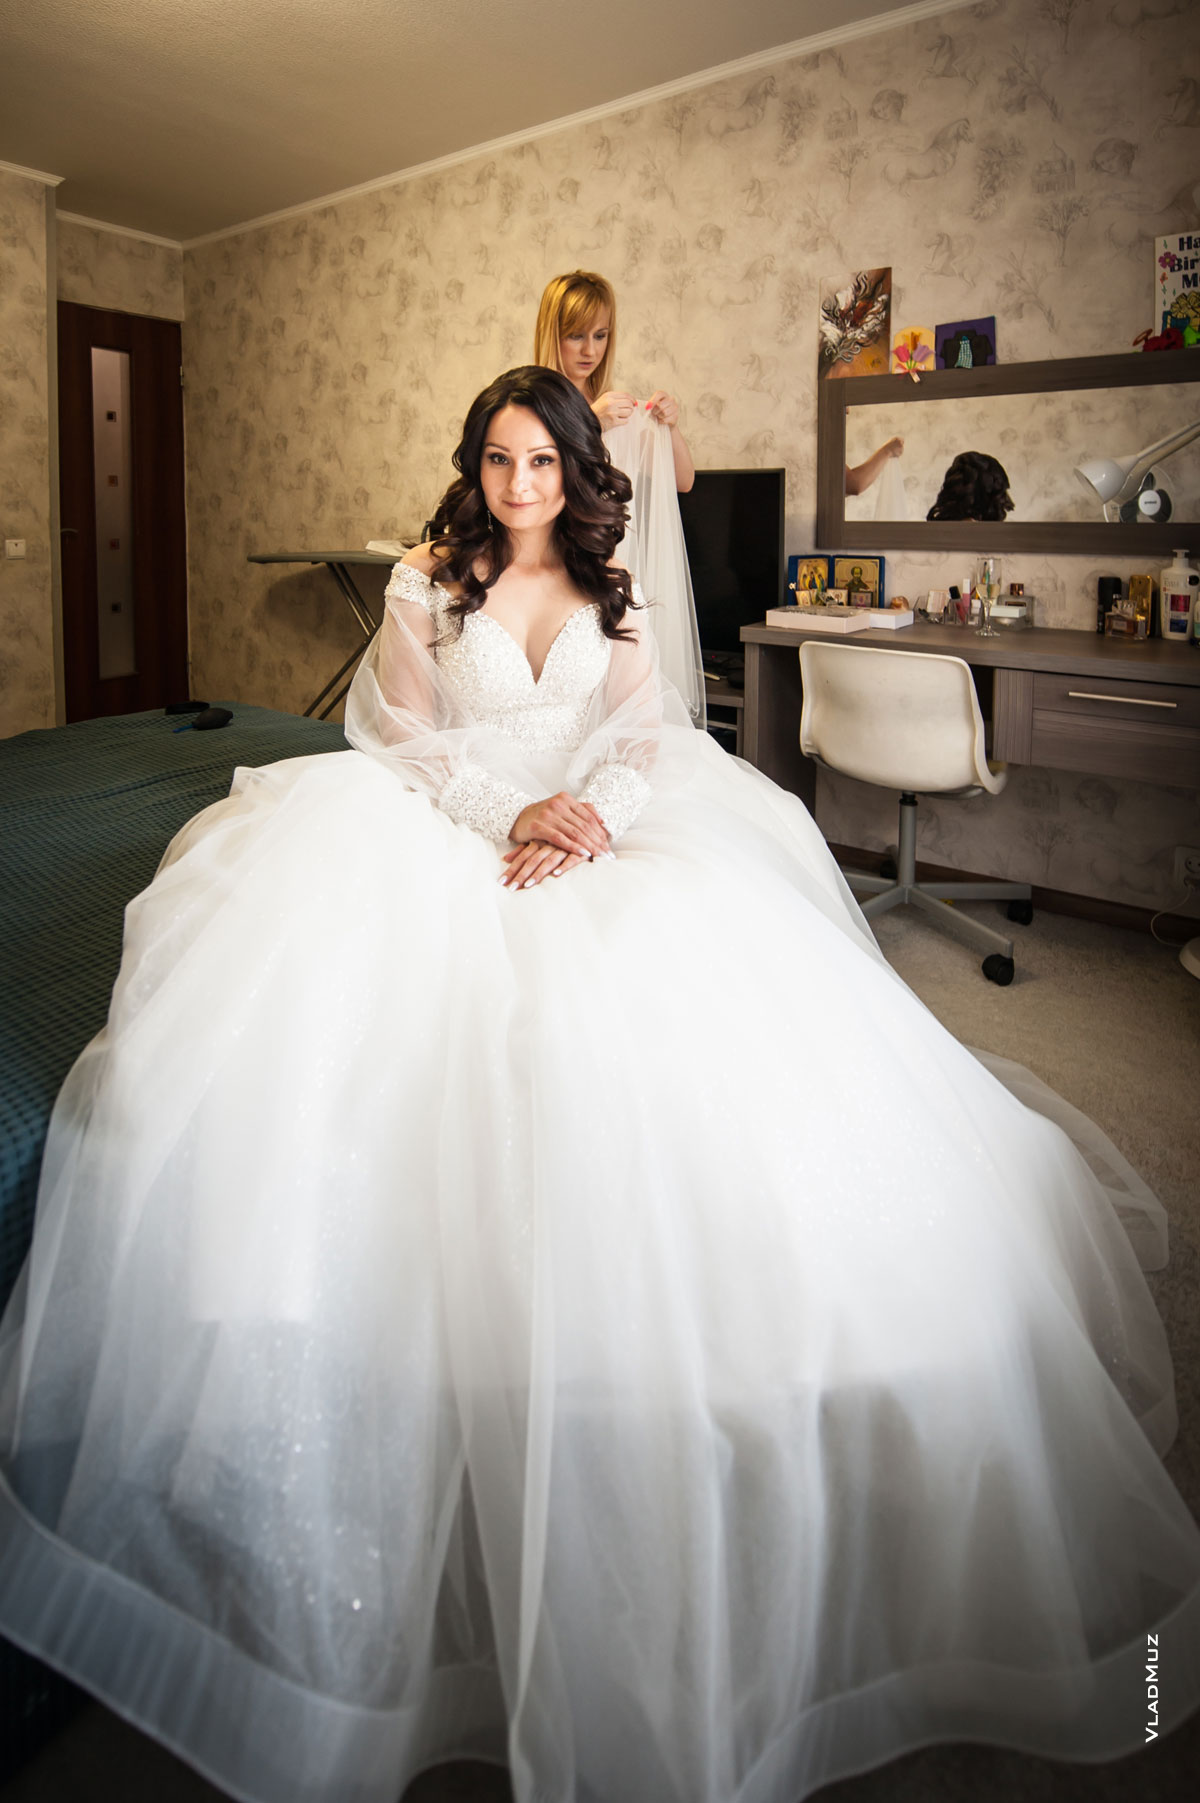 Фото подготовки невесты к свадьбе. Фотопортрет красивой невесты